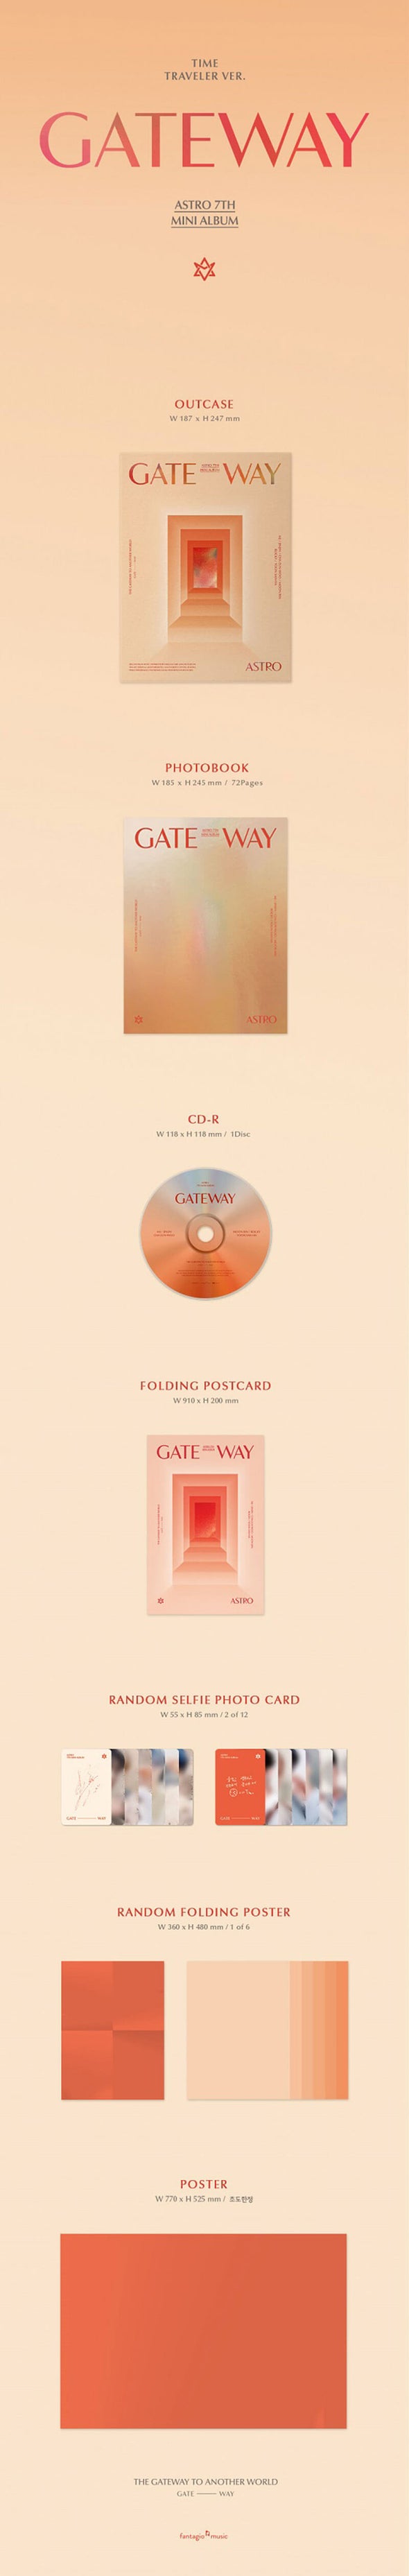 ASTRO - 'Gateaway' 7th Mini Album